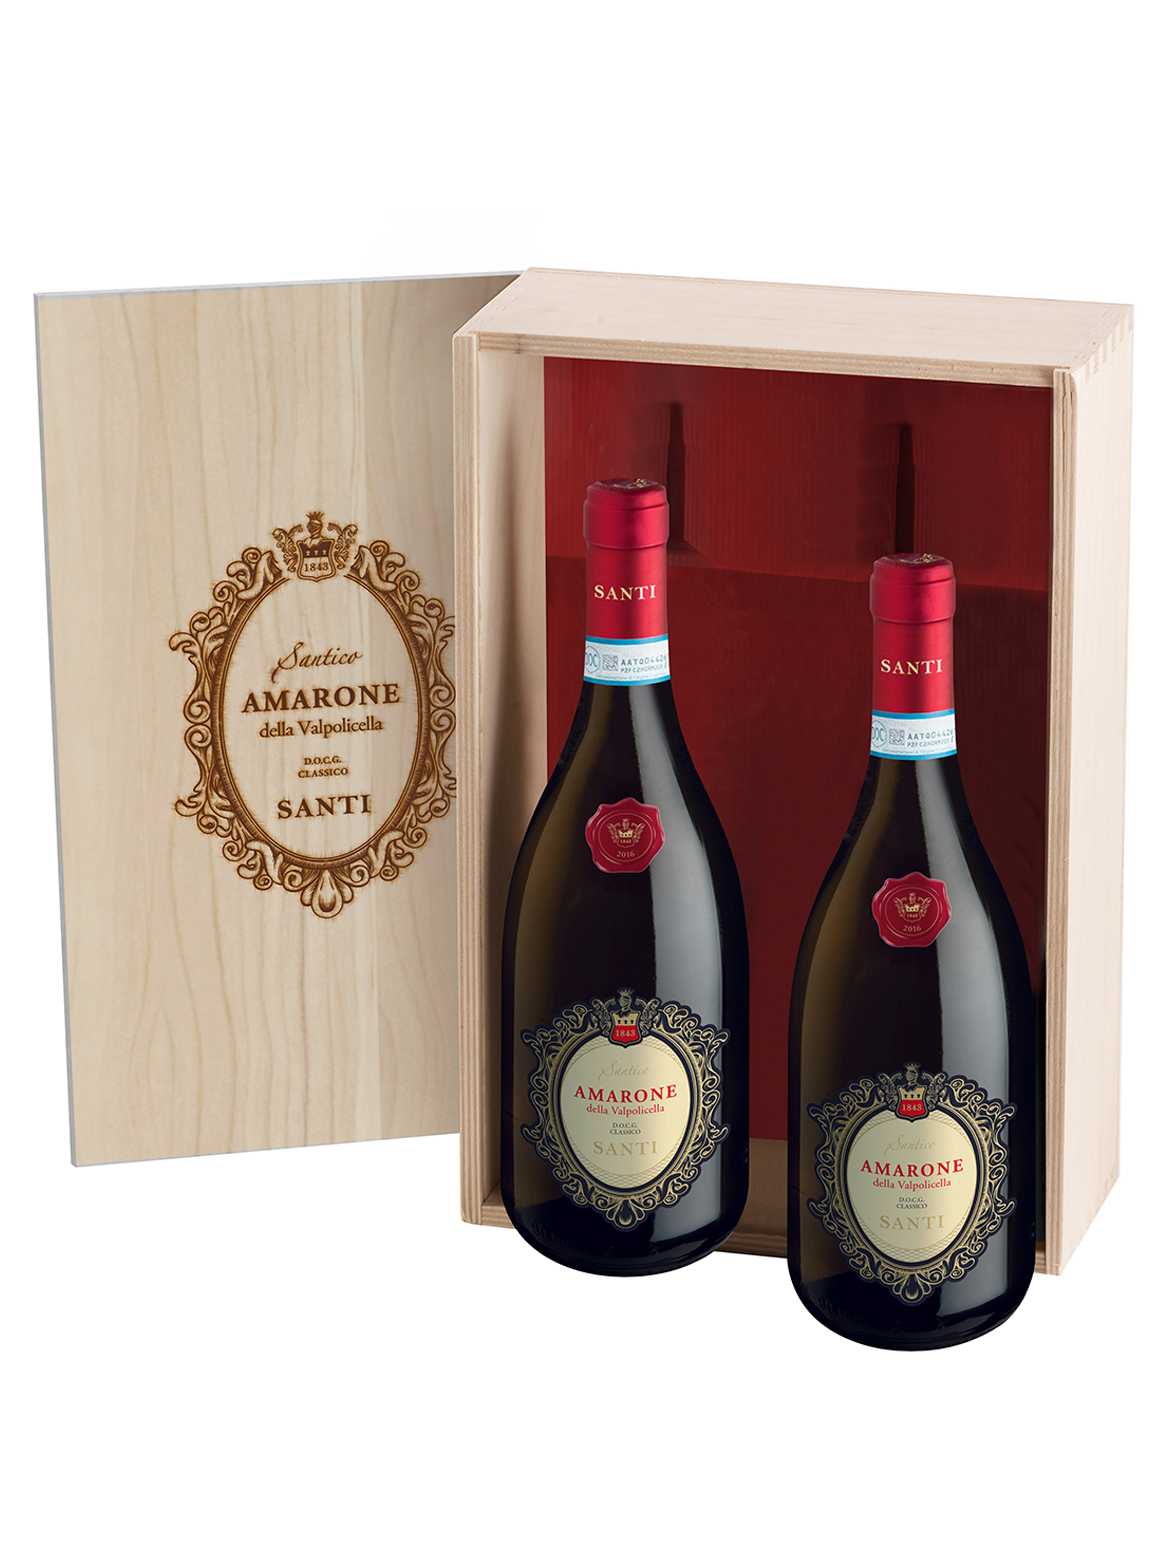 Cassetta Amarone Santico – Confezione Amarone Santico 2 Bottiglie – Rosso